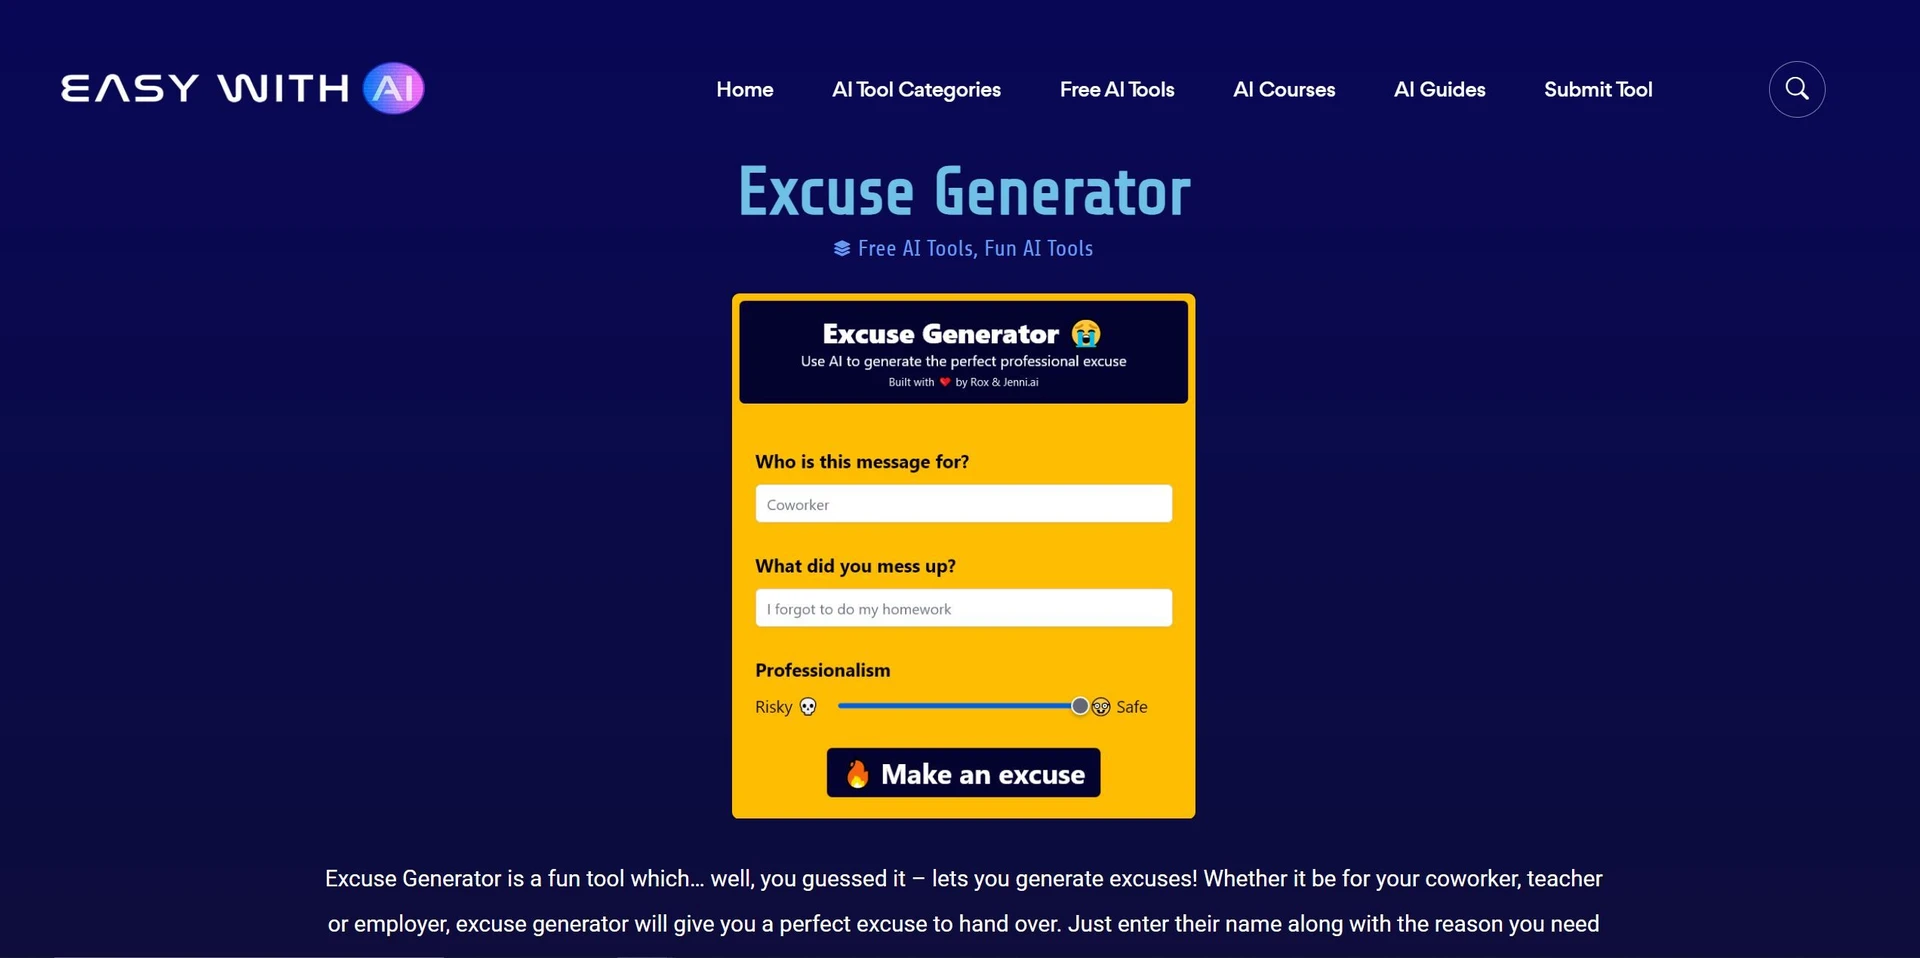 Excuse Generatorwebsite picture